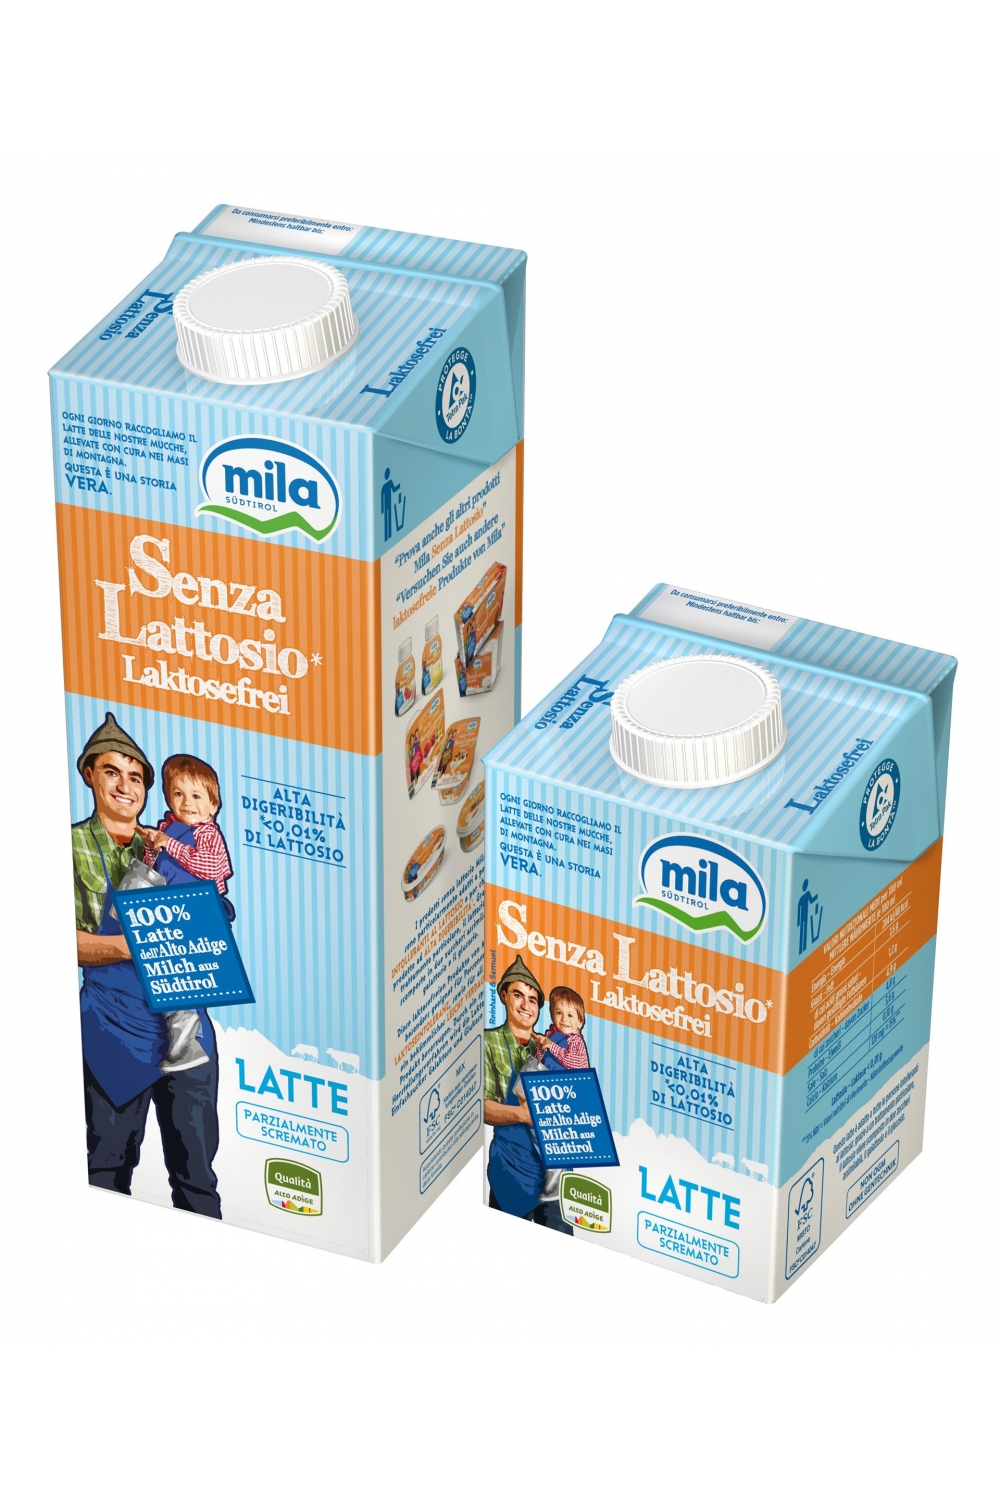 Latte Uht 1% Grassi: Senza Lattosio - Zymil